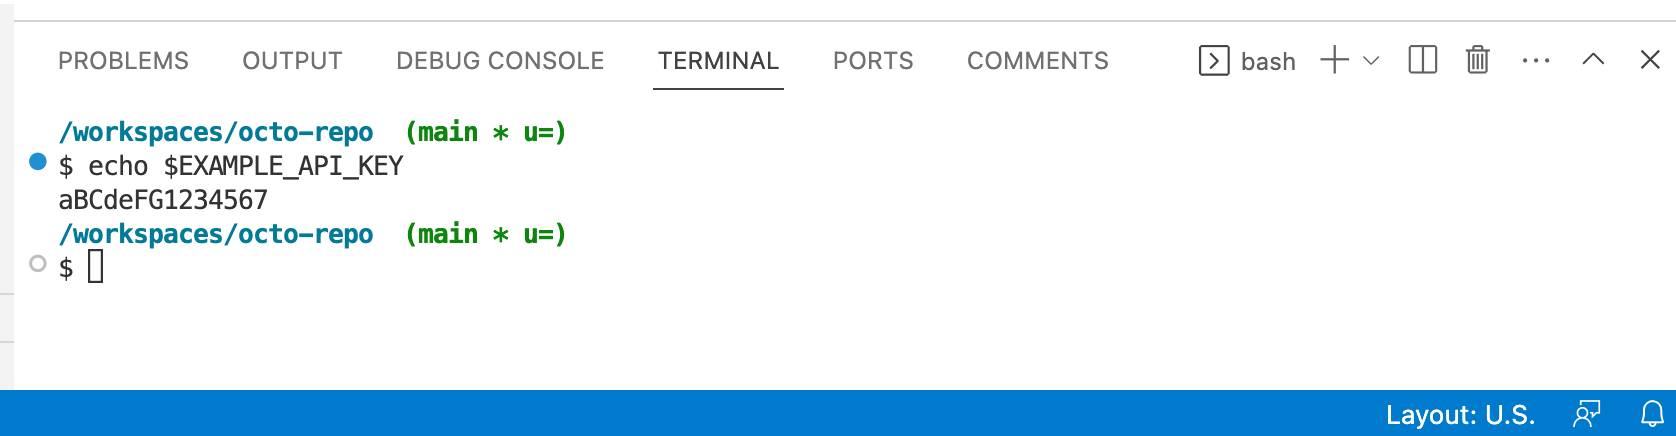 Captura de tela do Terminal no VS Code. O comando "echo $EXAMPLE_API_KEY" retornou "aBCdeFG1234567".